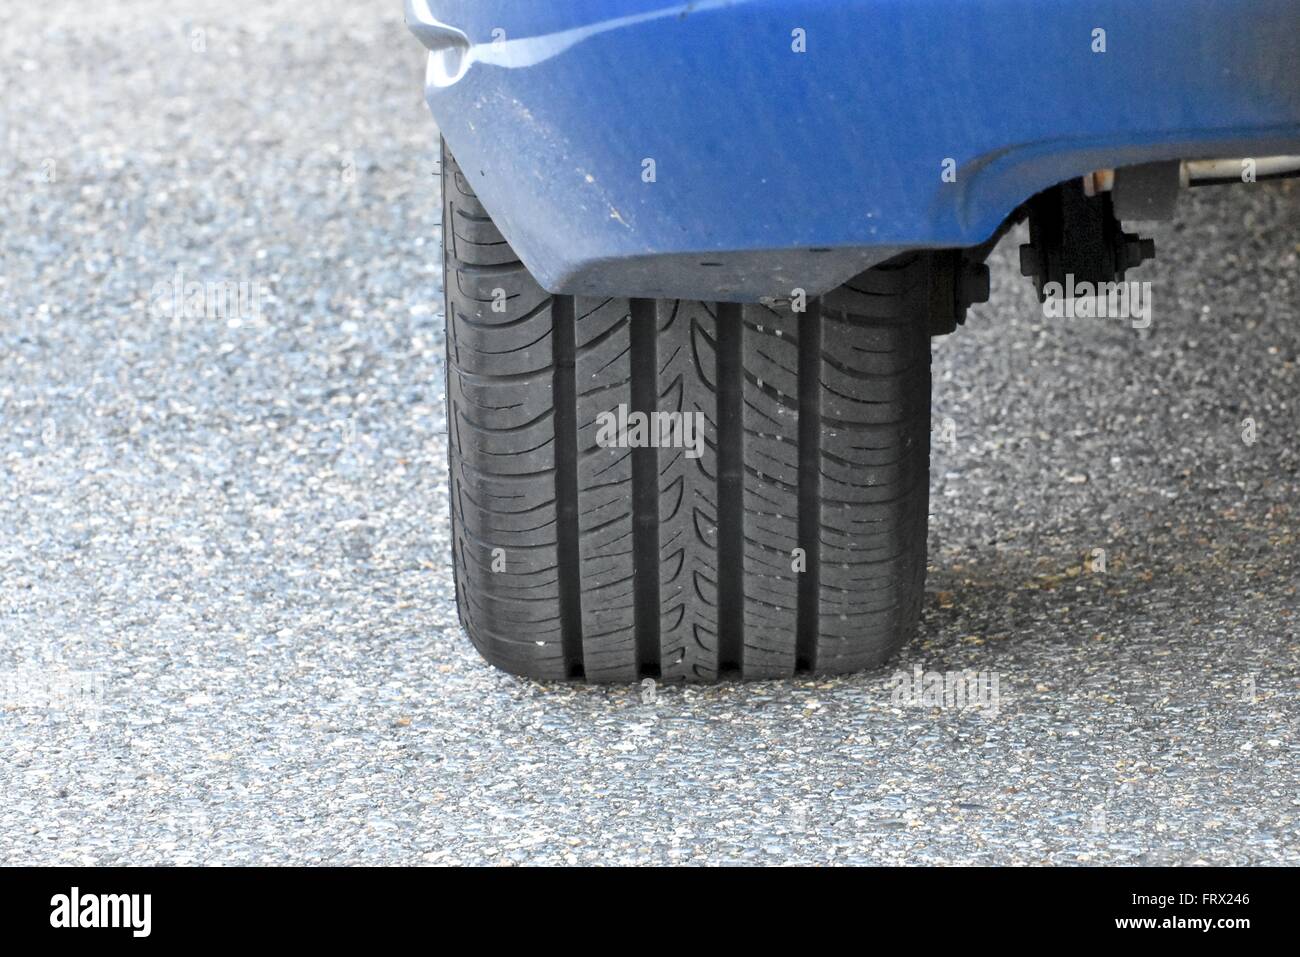 Reifen auf einem Autoreifen treten Stockfoto